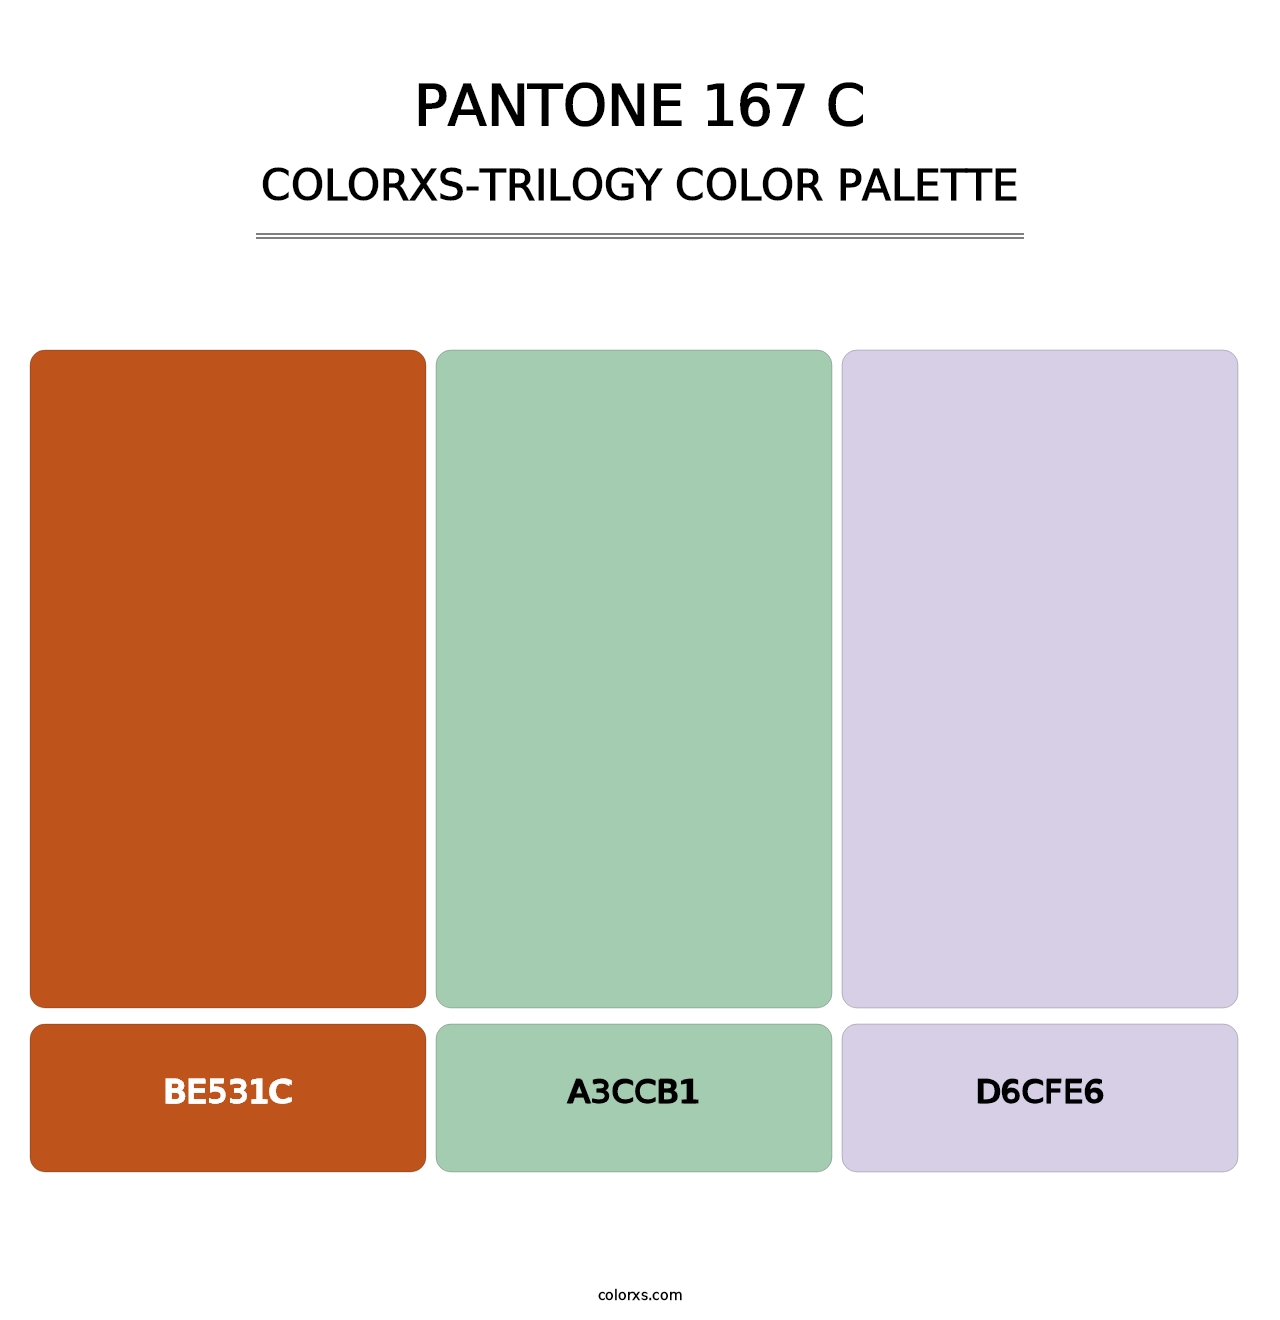 PANTONE 167 C - Colorxs Trilogy Palette